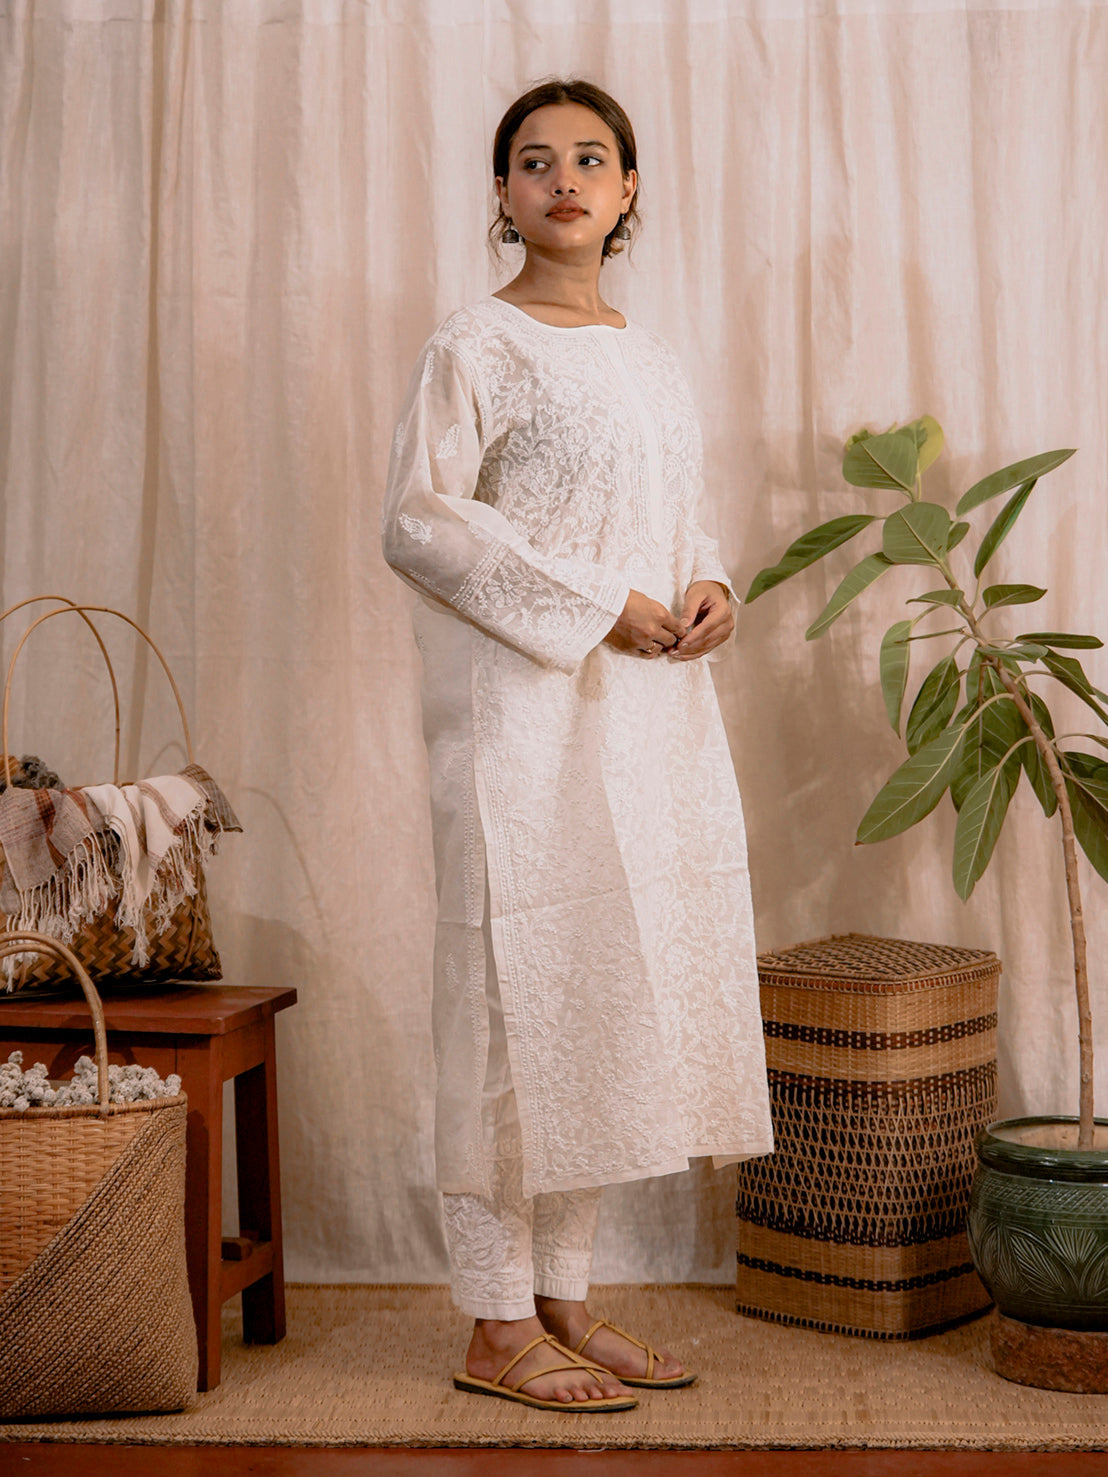 punarnawa soul of artistry handloom kurtis dresses tops xs set firdaus set chikankari kurta pant 32440495046713